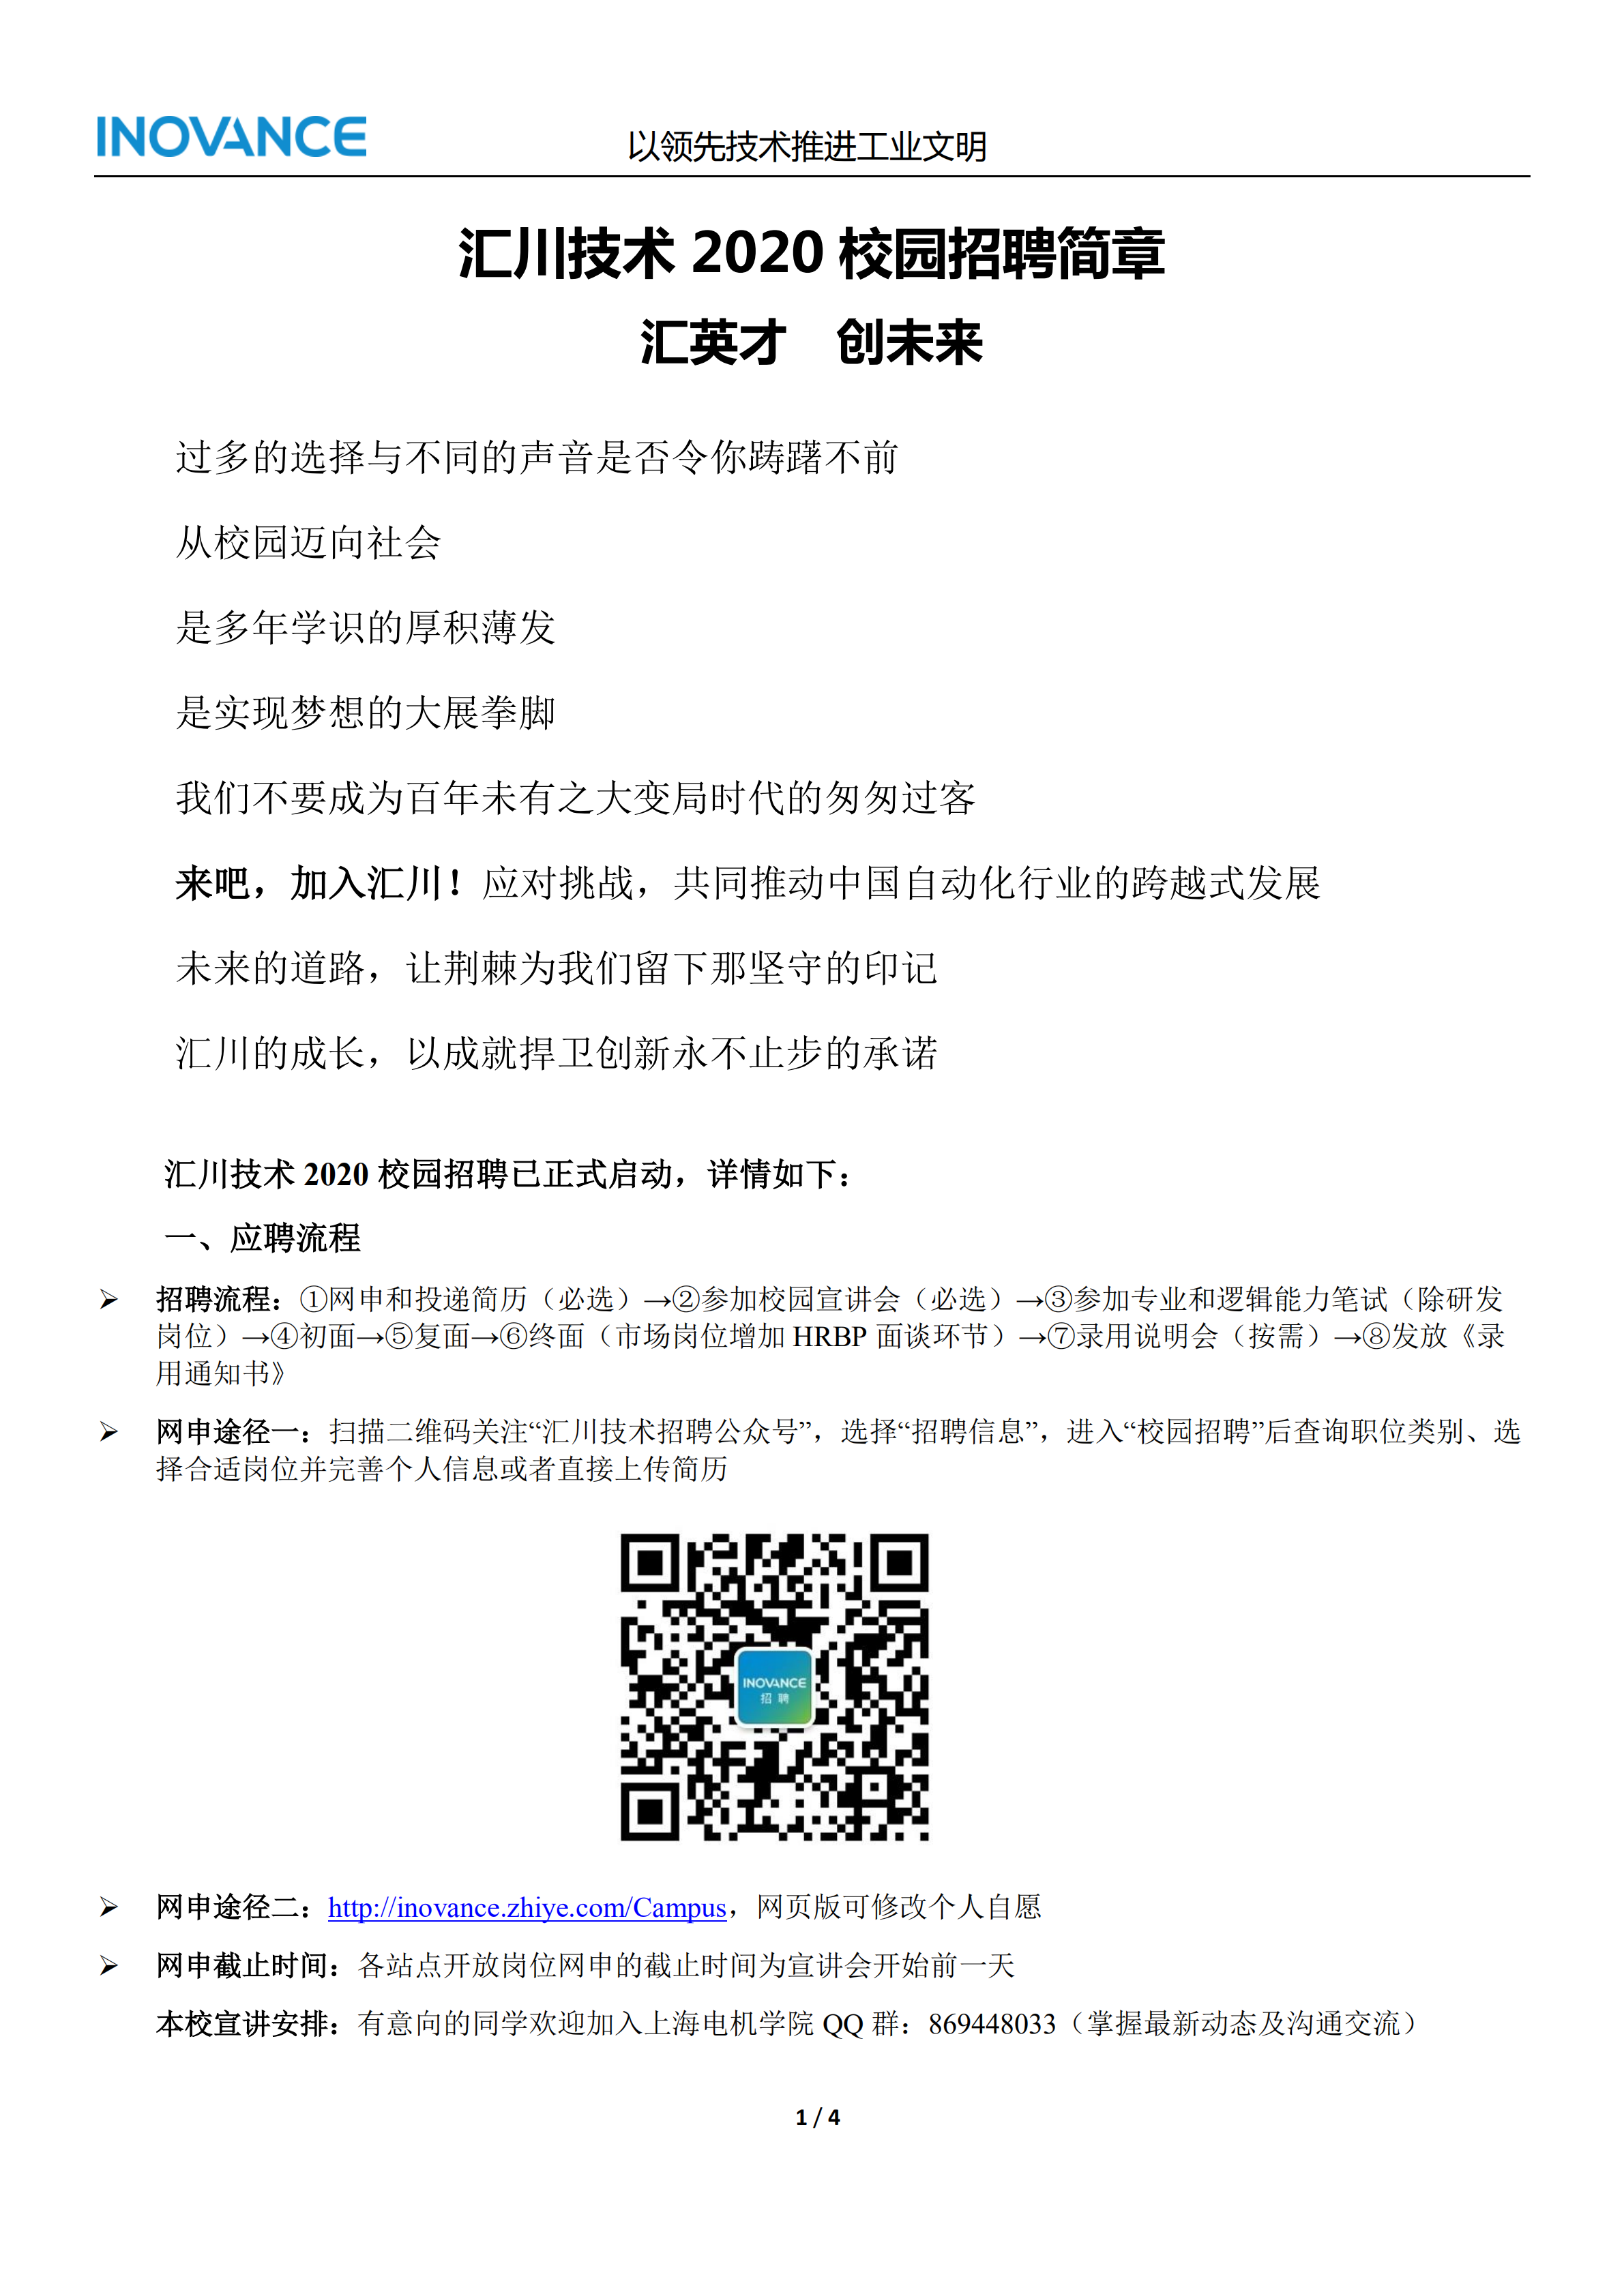 汇川技术2020校招简章—上海电机学院(1)_00.png